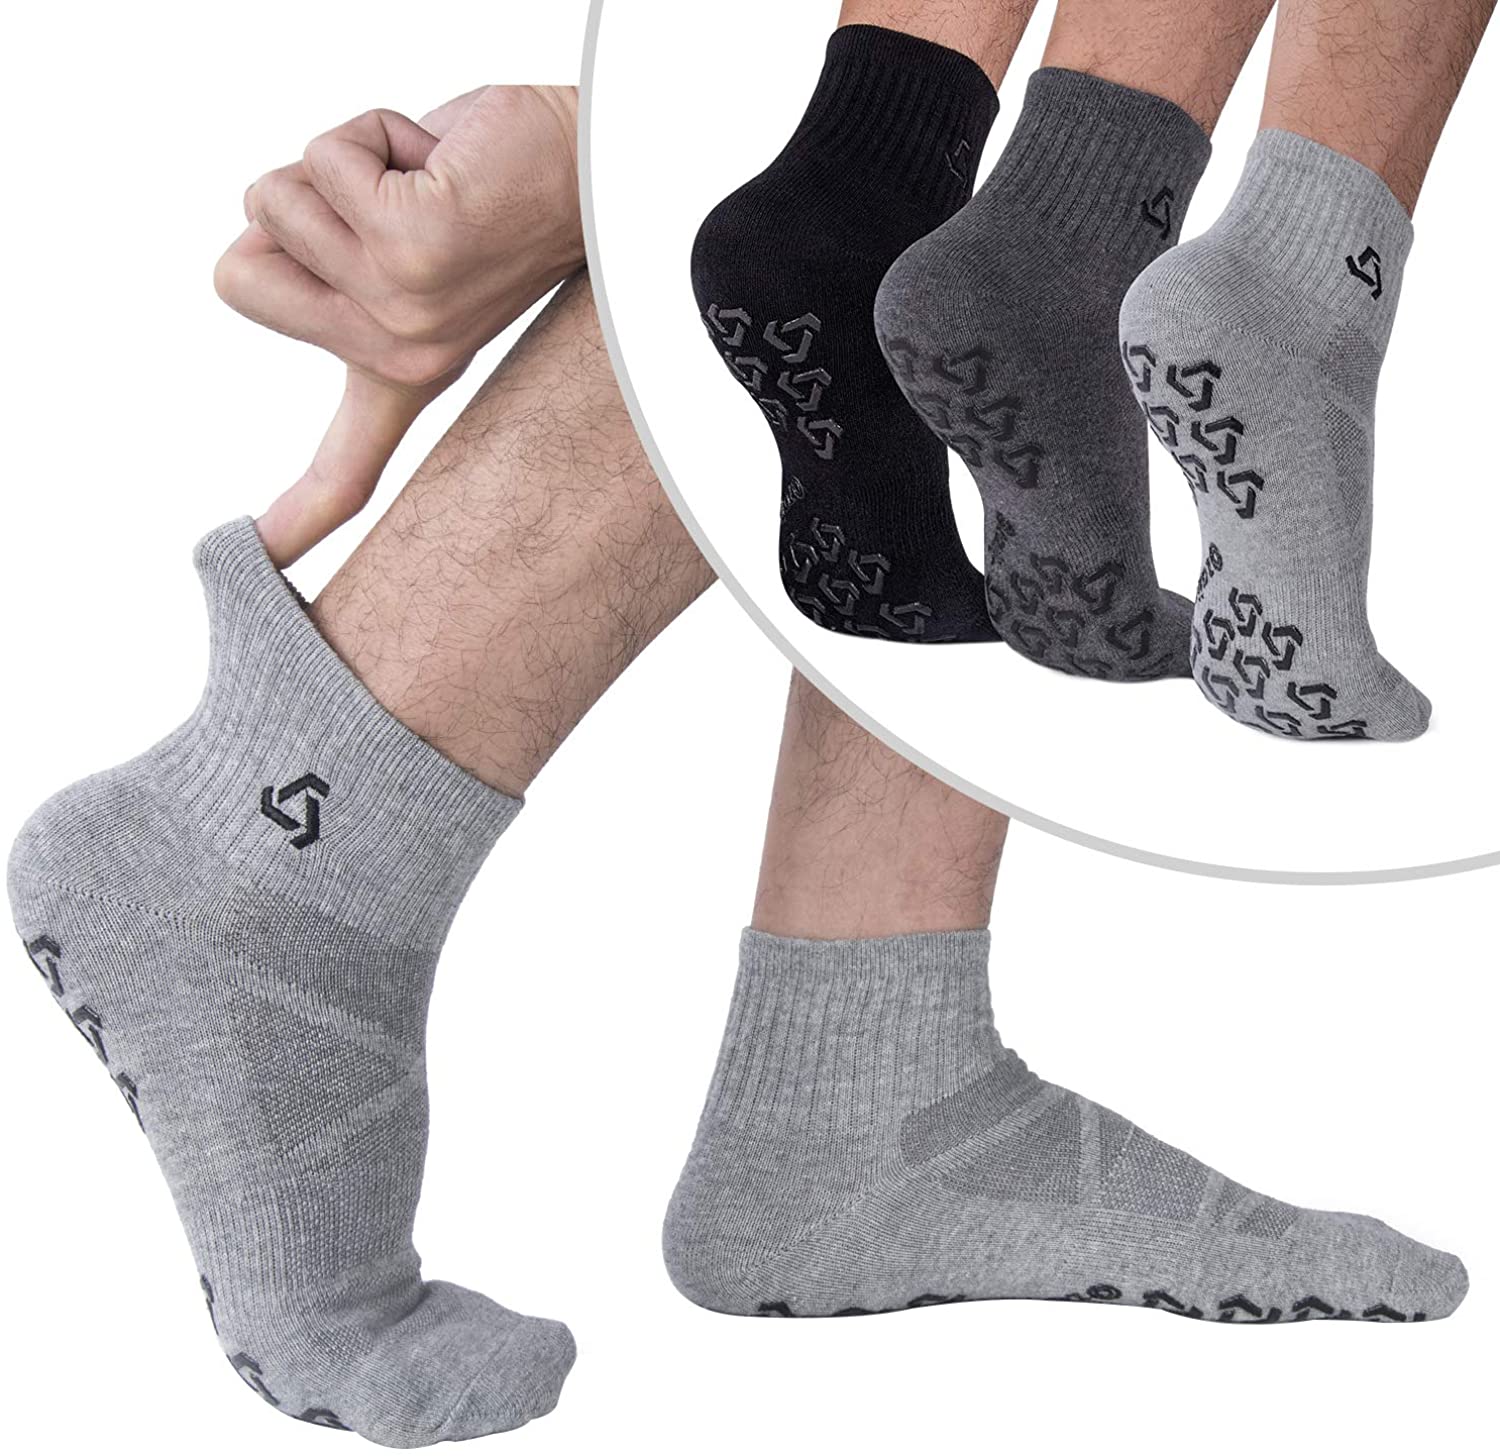 Yoga Socks For Men Non-Slip Pilates Anti-Skid Barre Socks with Grips 